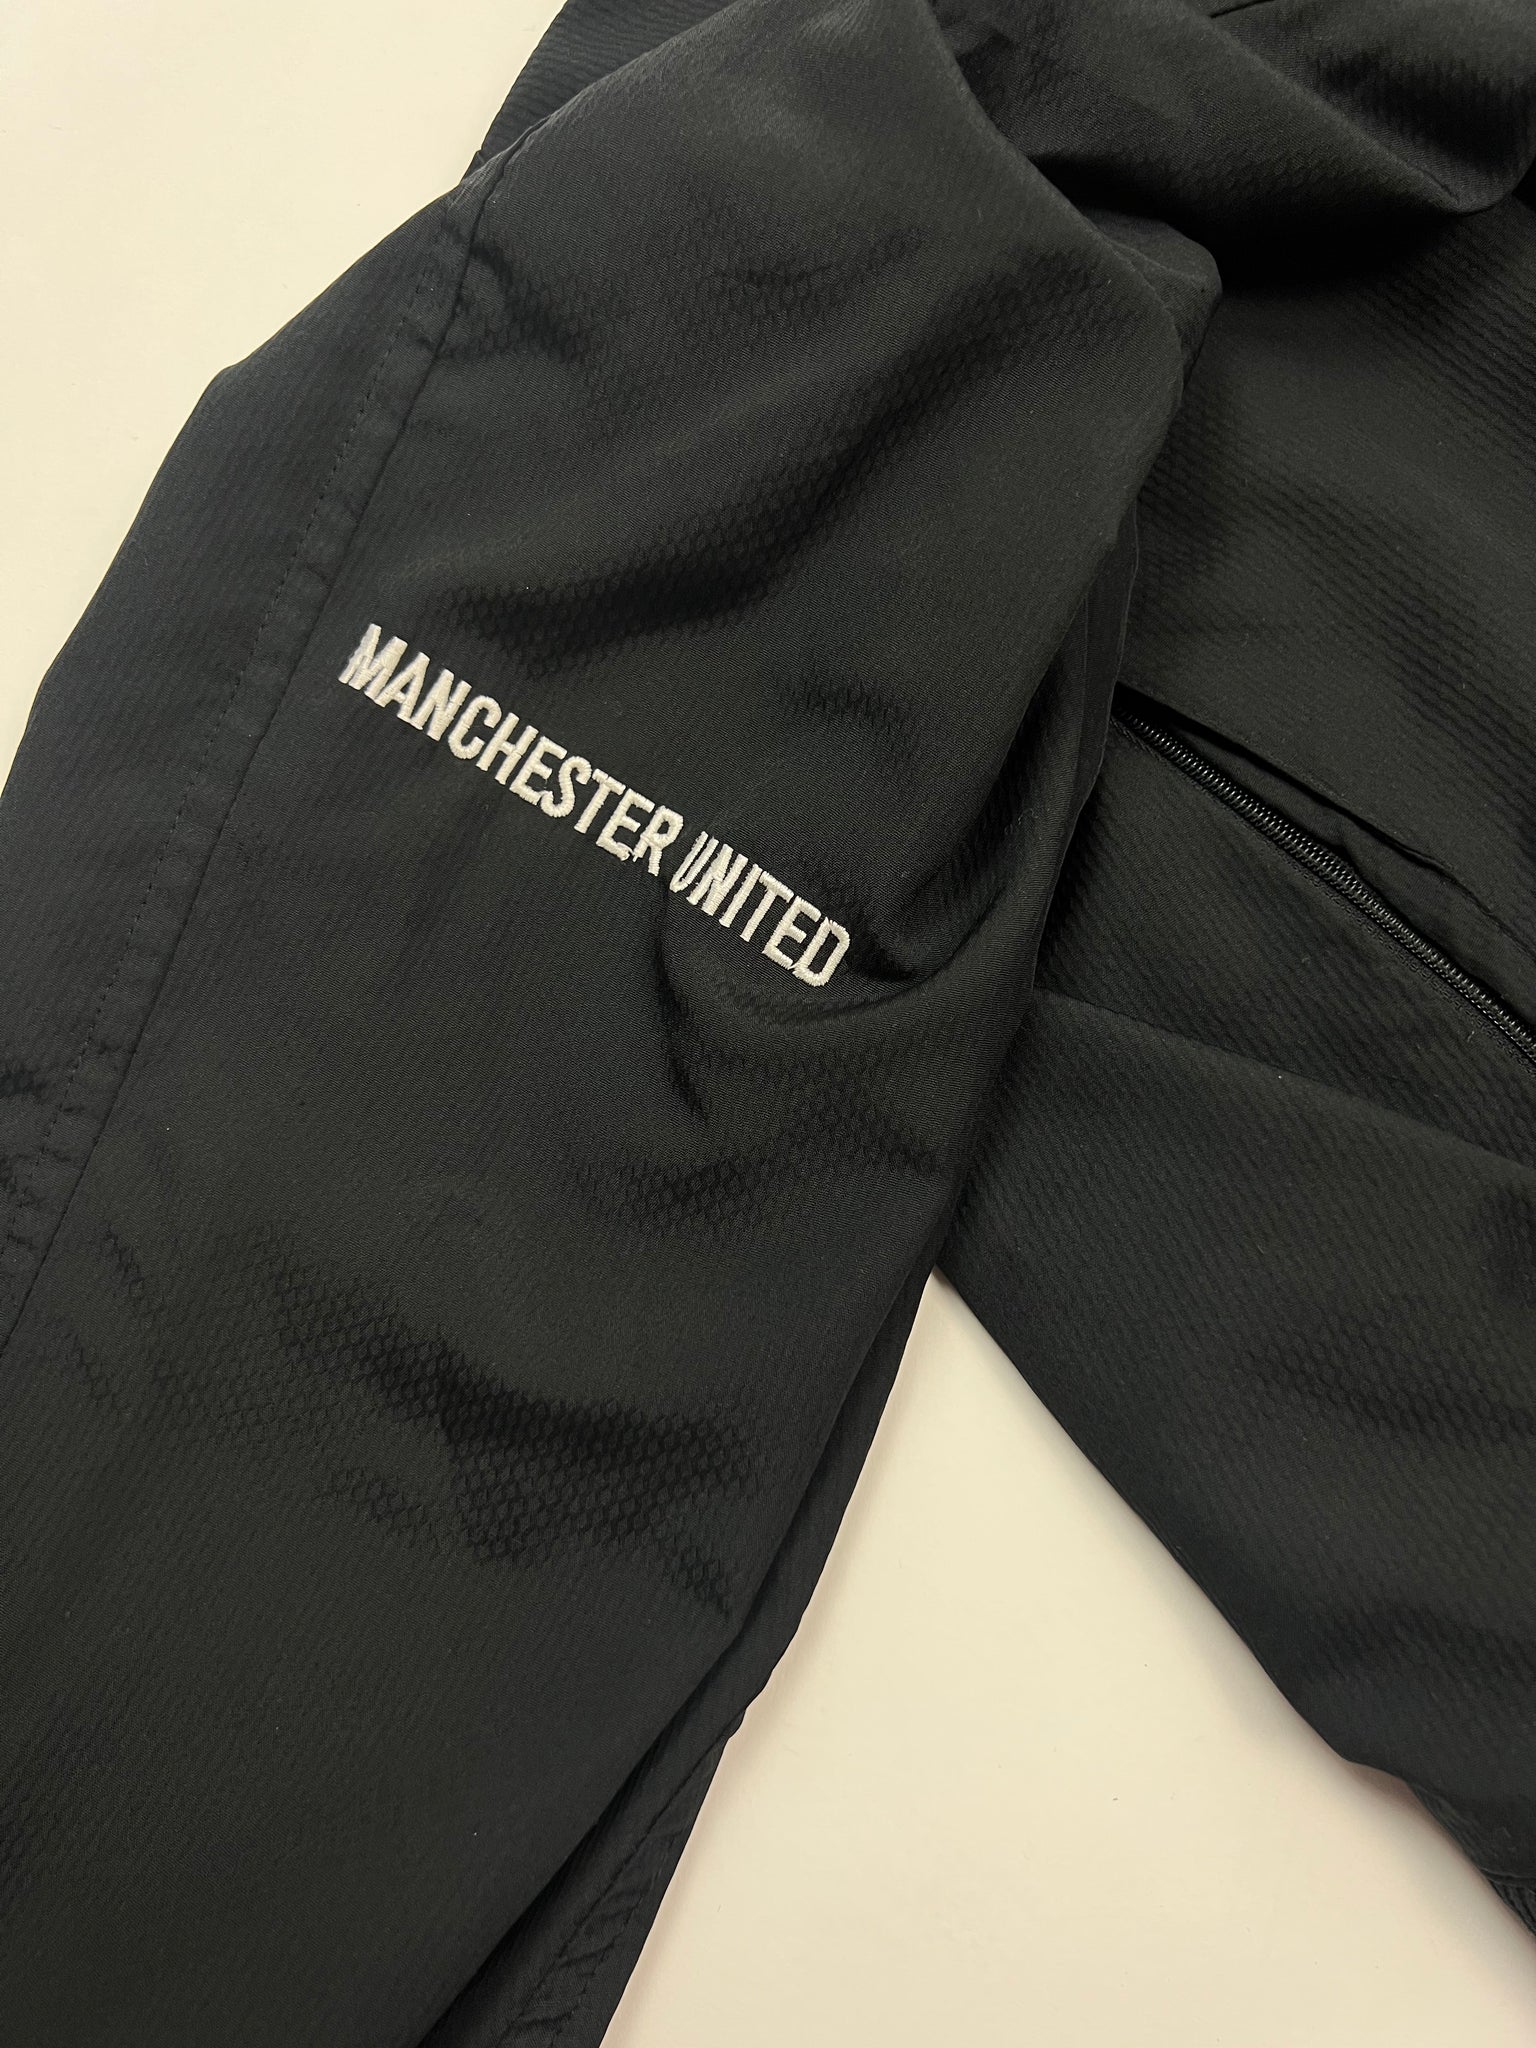 Nike Manchester United Track Jacket (M)